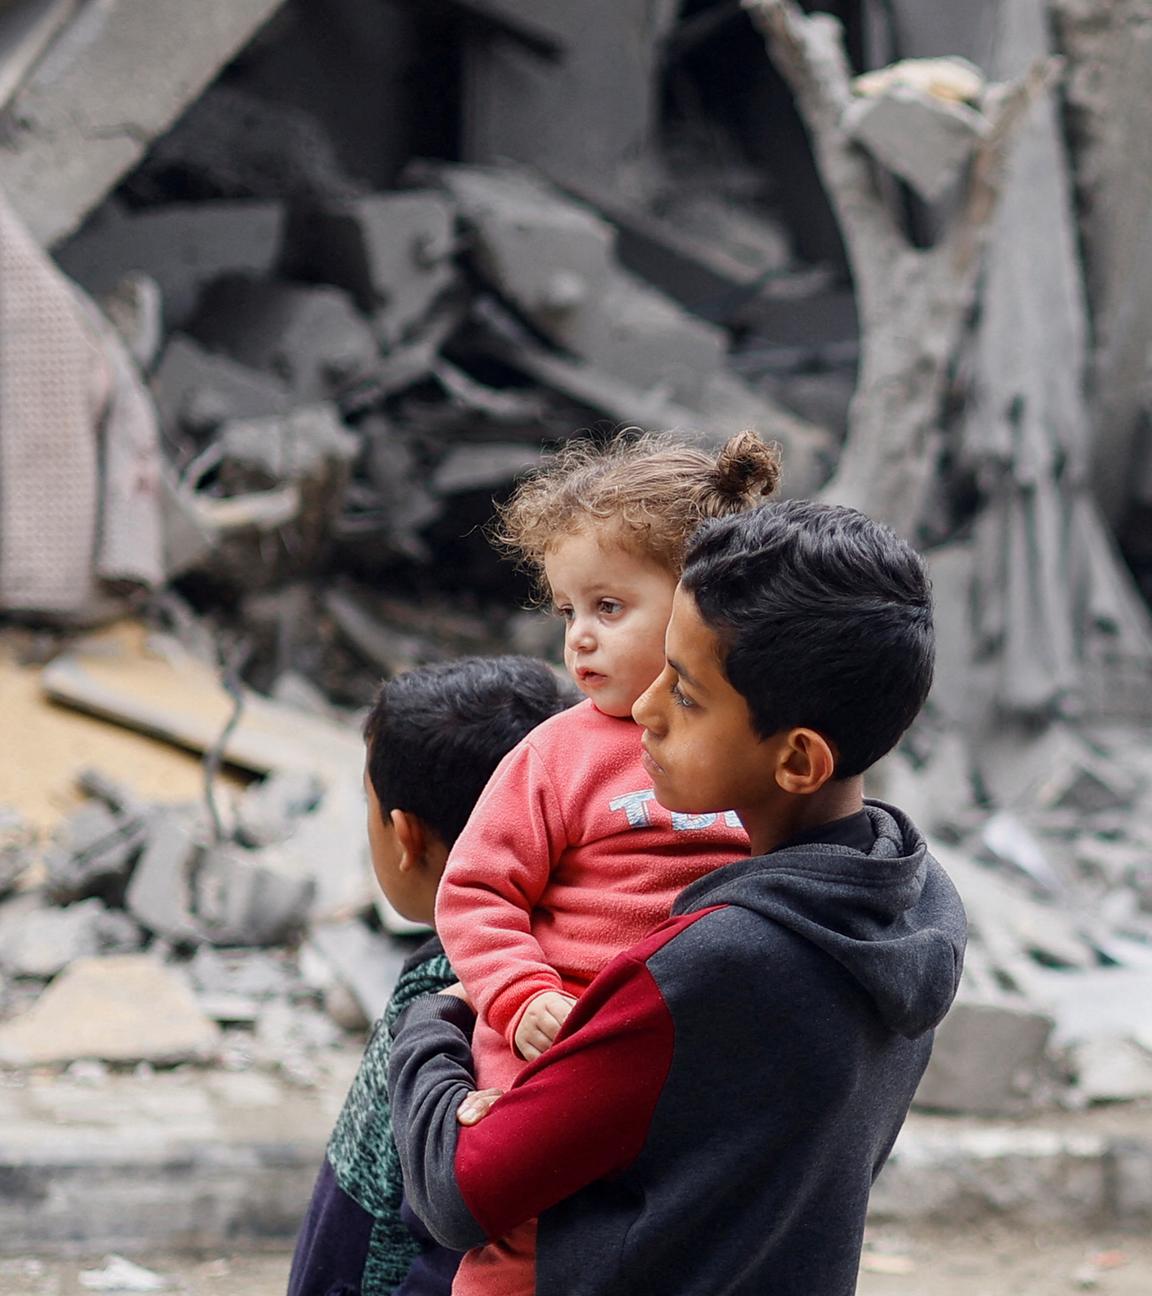 Palästinensische Kinder vor den Trümmern in Rafah